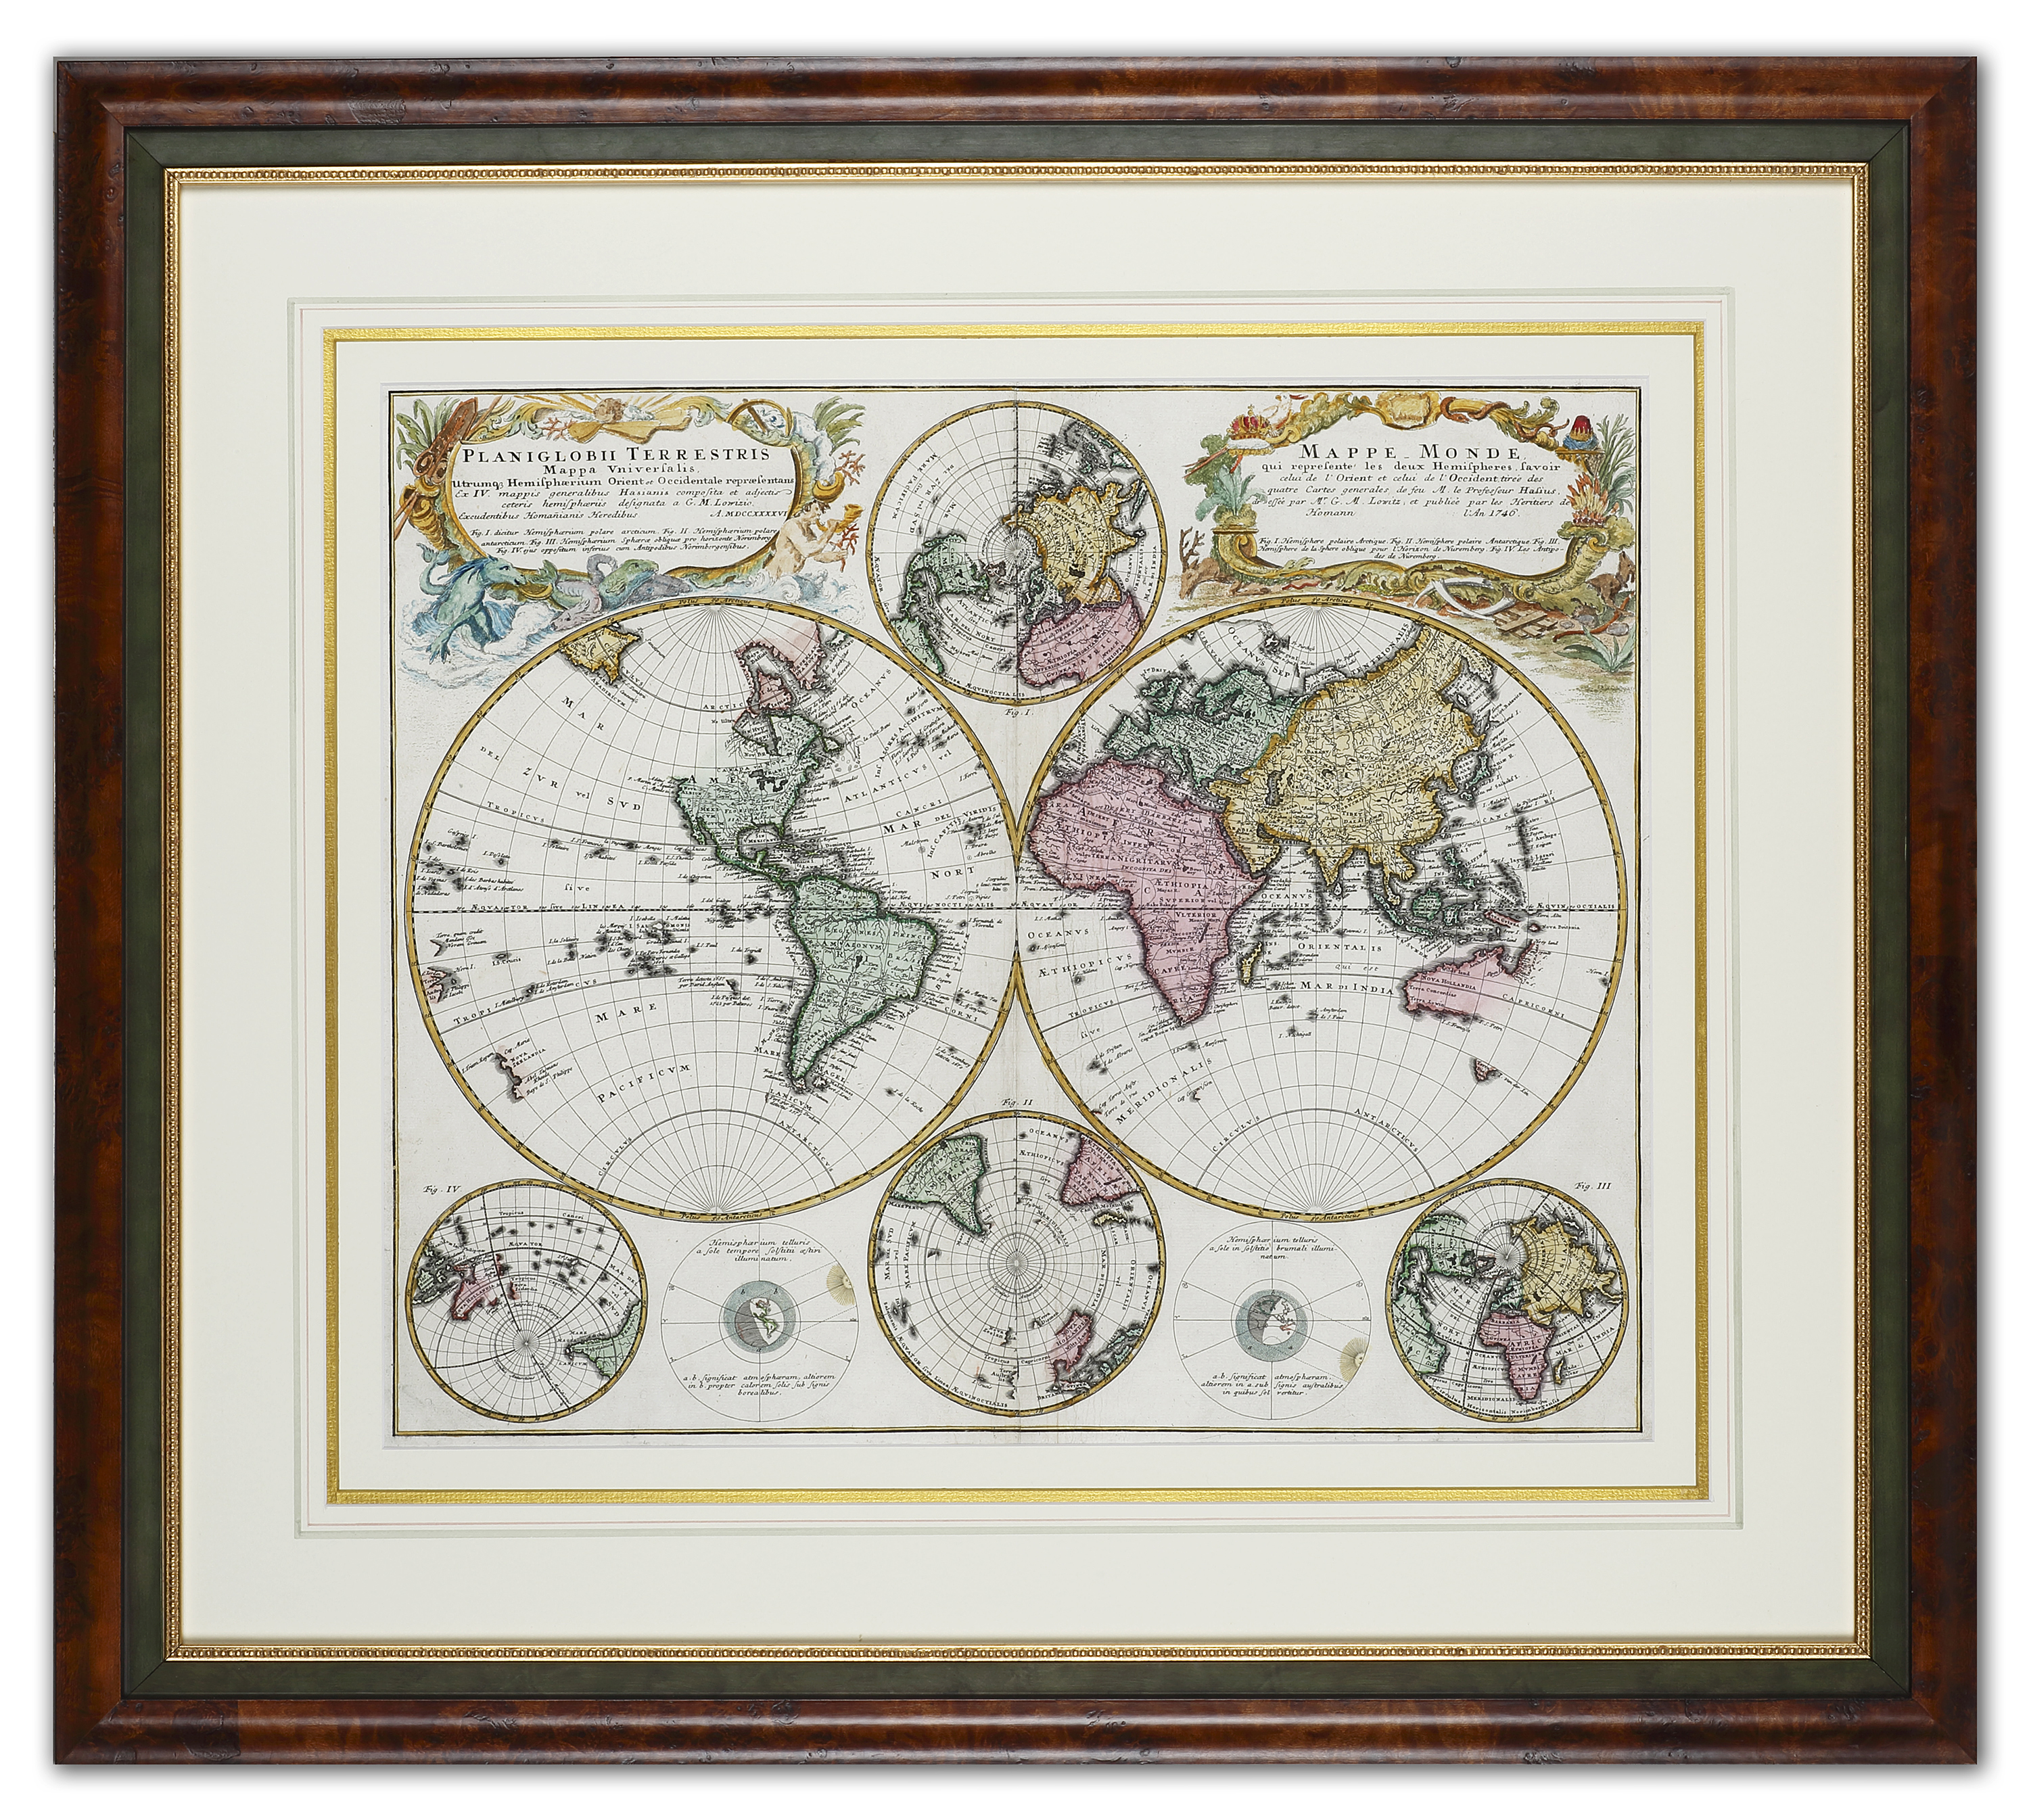 Planiglobii Terres Tris Mappa Universalis. /  Mappe-Monde qui Represente les Deux Hemispheres Favoir - Antique Map from 1746